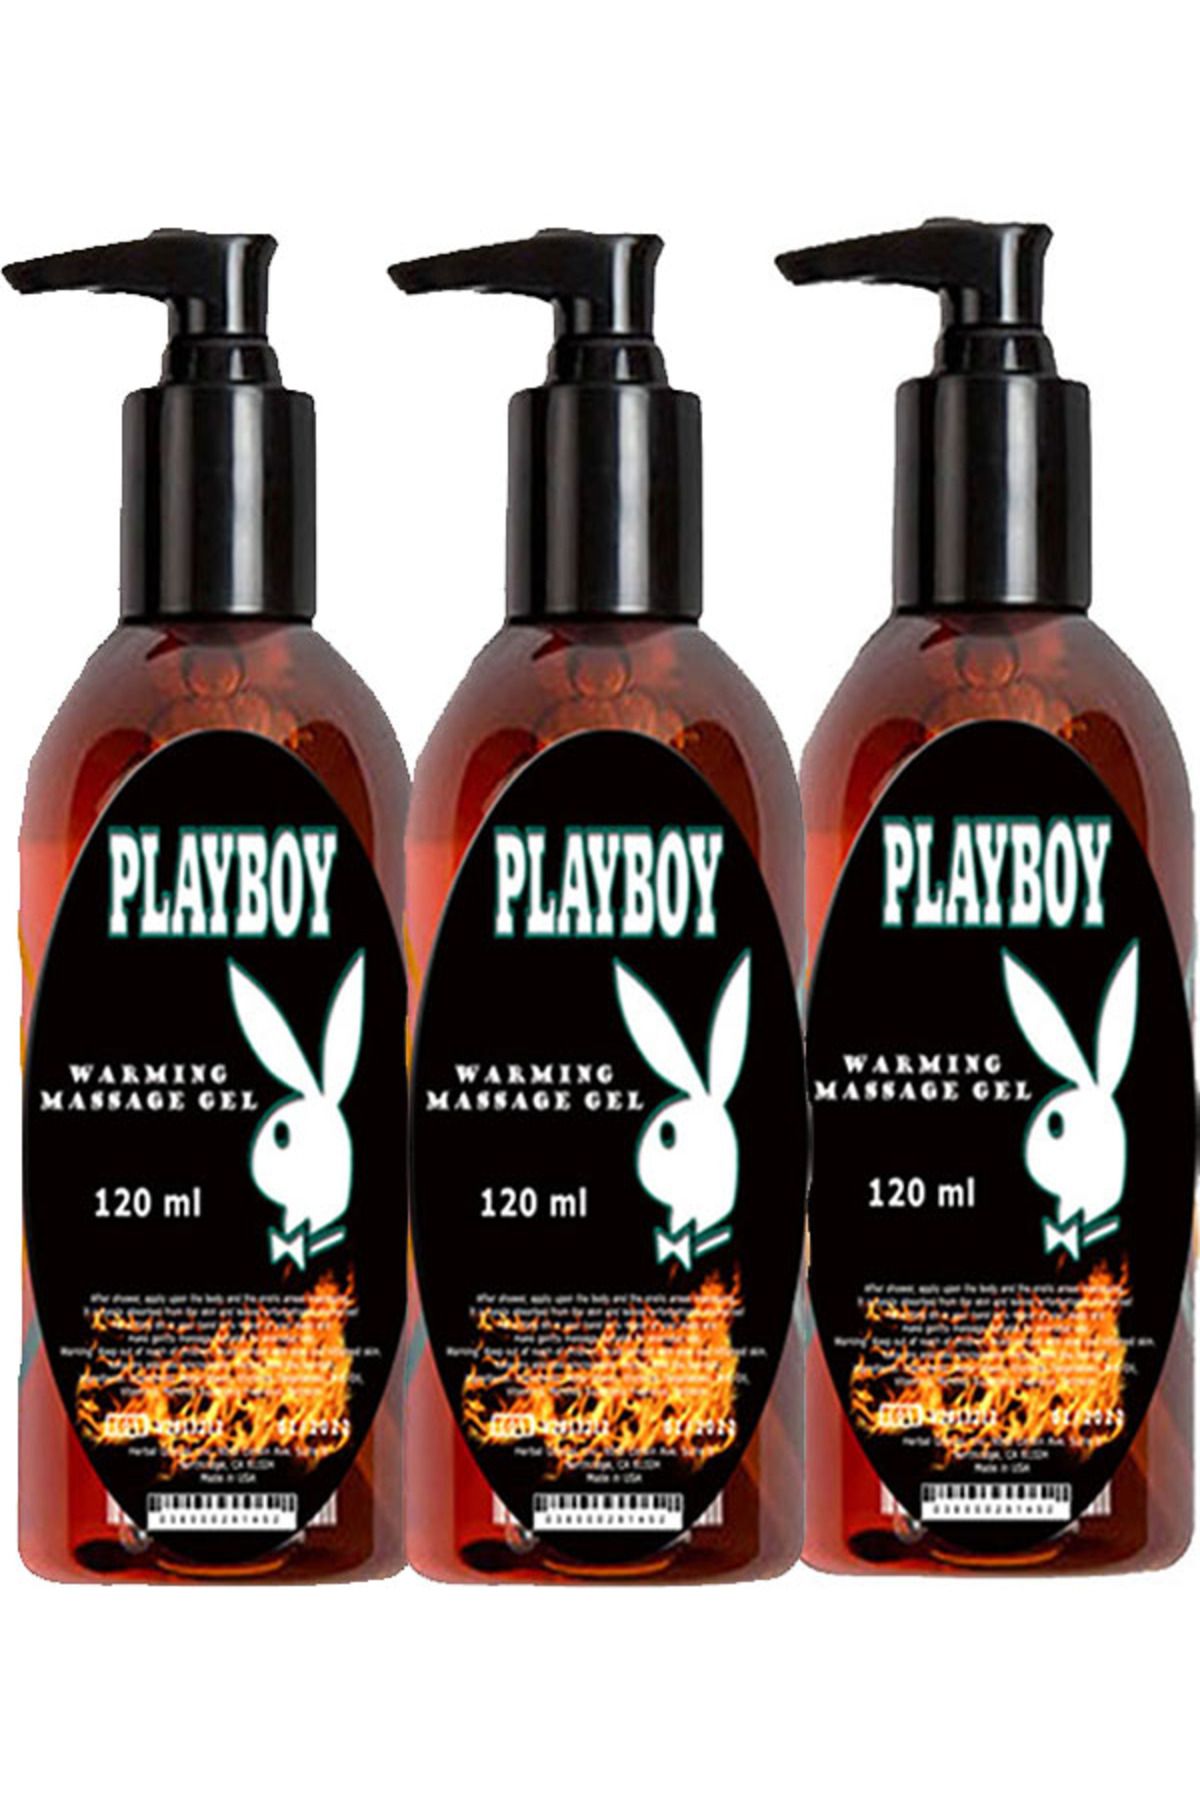 Playboy Isıtıcılı Masaj Yağı / Warming Massage Oil 120ml X 3 ad